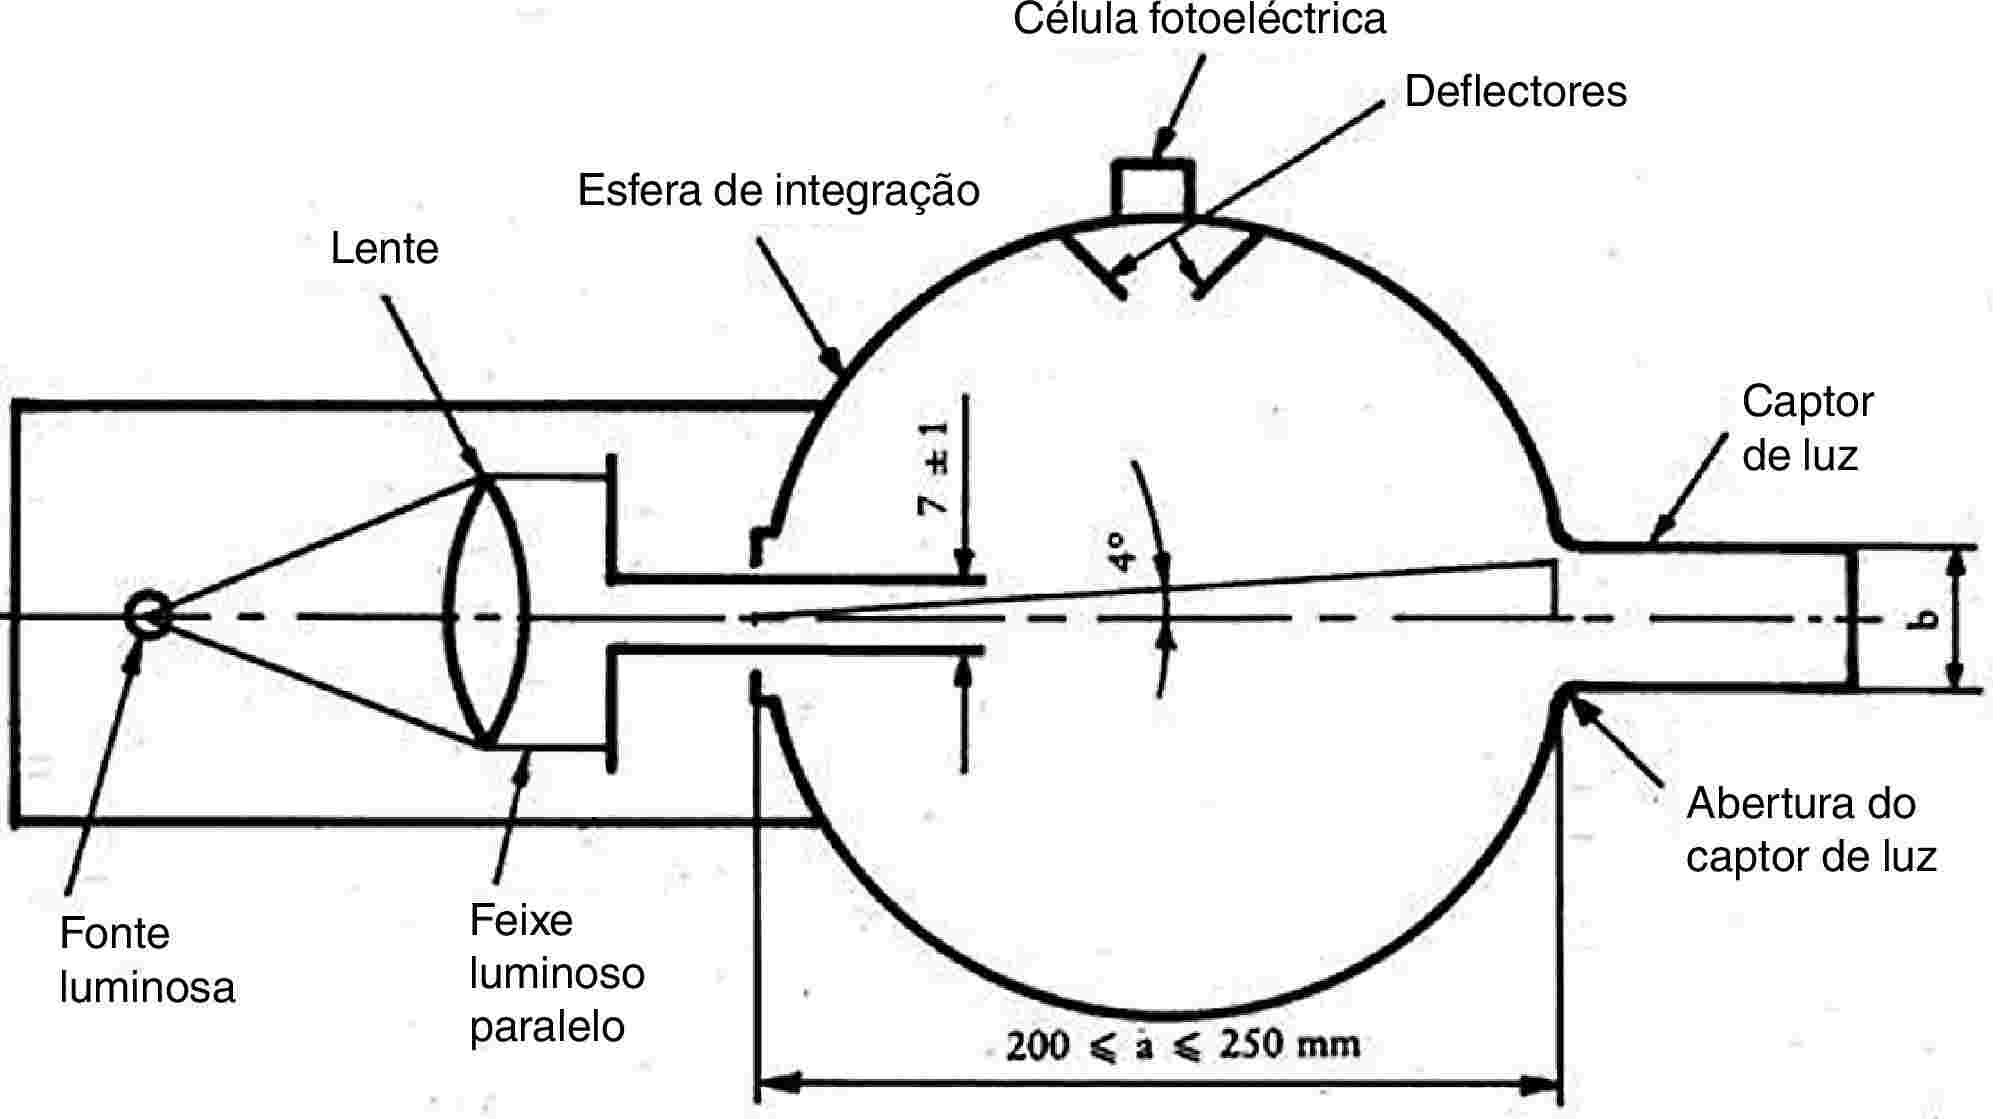 LenteEsfera de integraçãoCélula fotoeléctricaDeflectoresCaptor de luzFonte luminosaFeixe luminoso paraleloAbertura do captor de luz